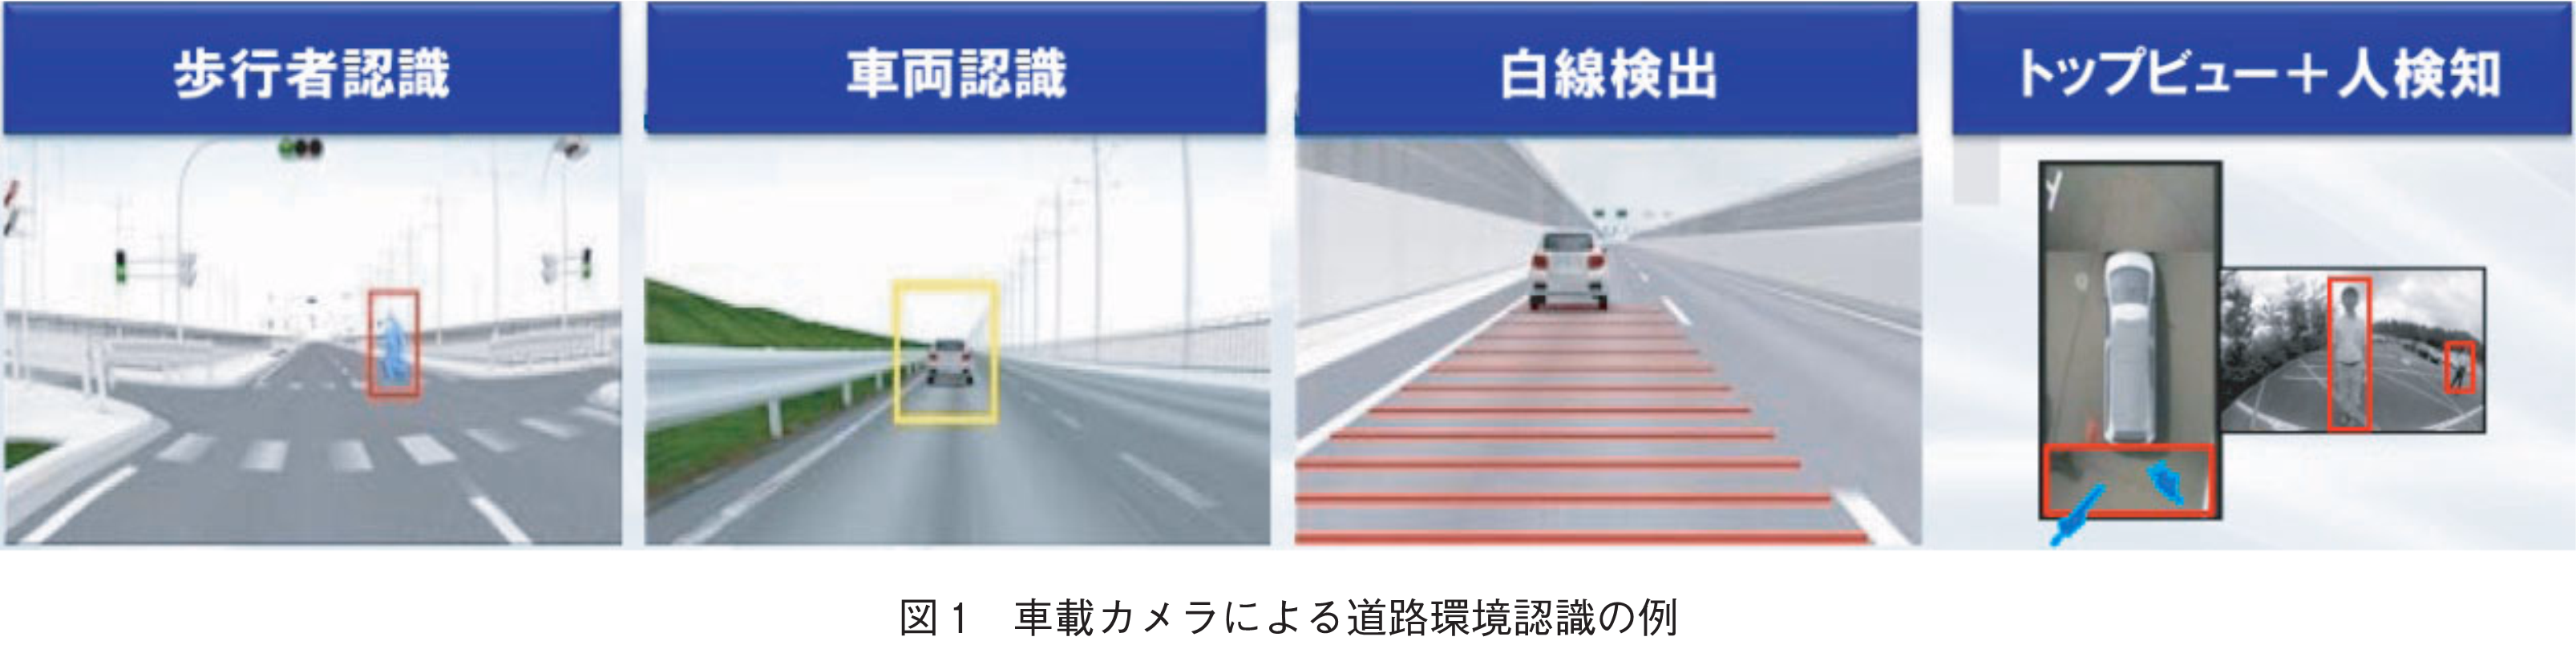 図1　車載カメラによる道路環境認識の例